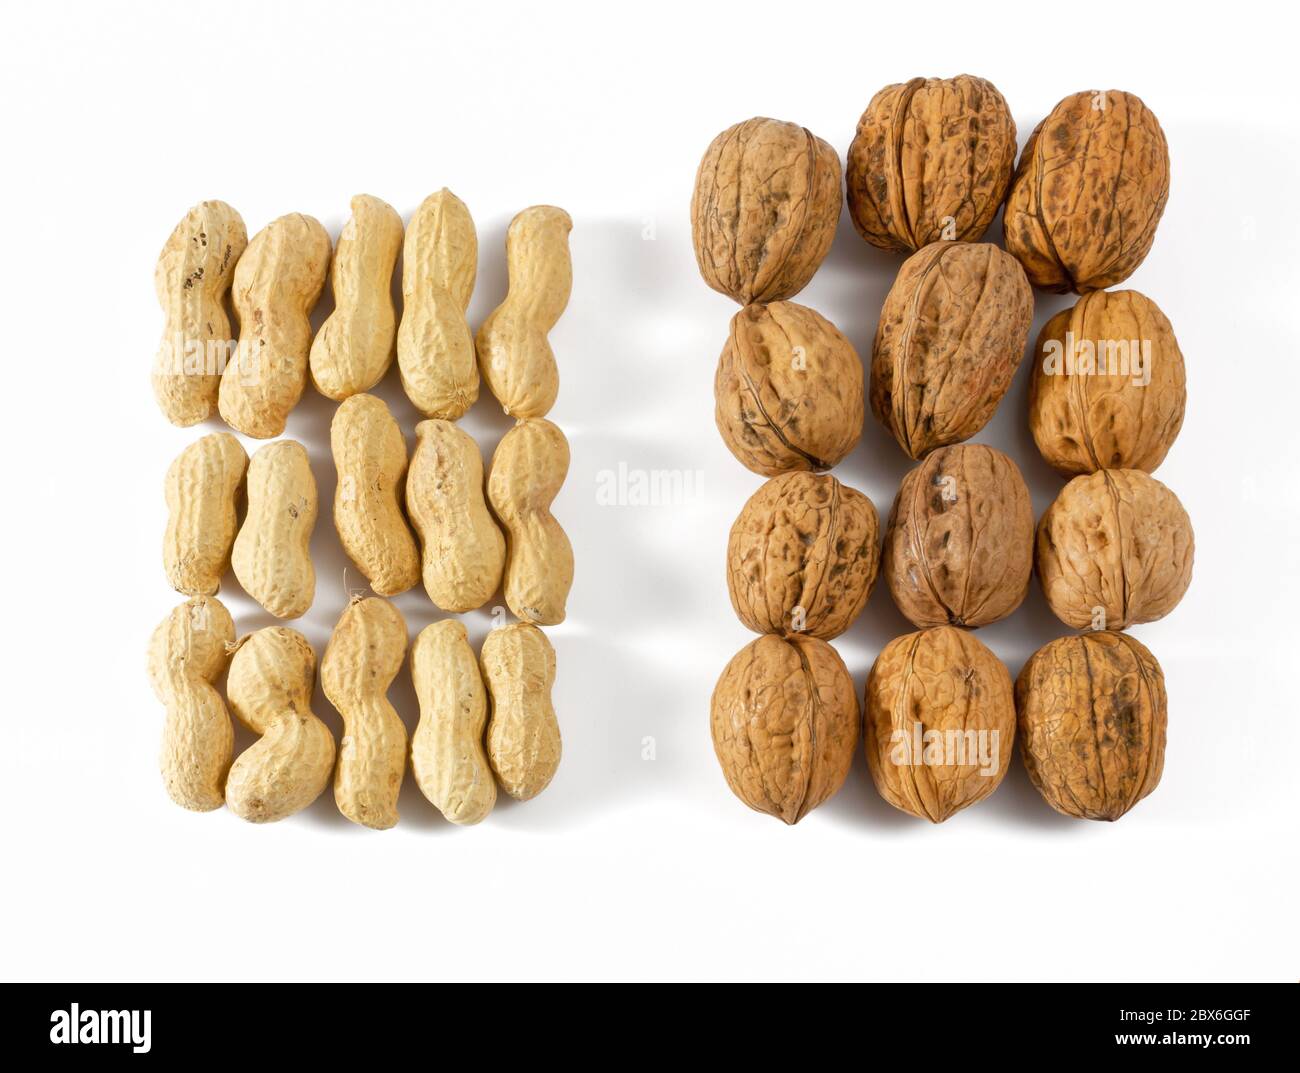 Un ensemble de quinze arachides à côté d'un ensemble de douze noix sur fond blanc Banque D'Images